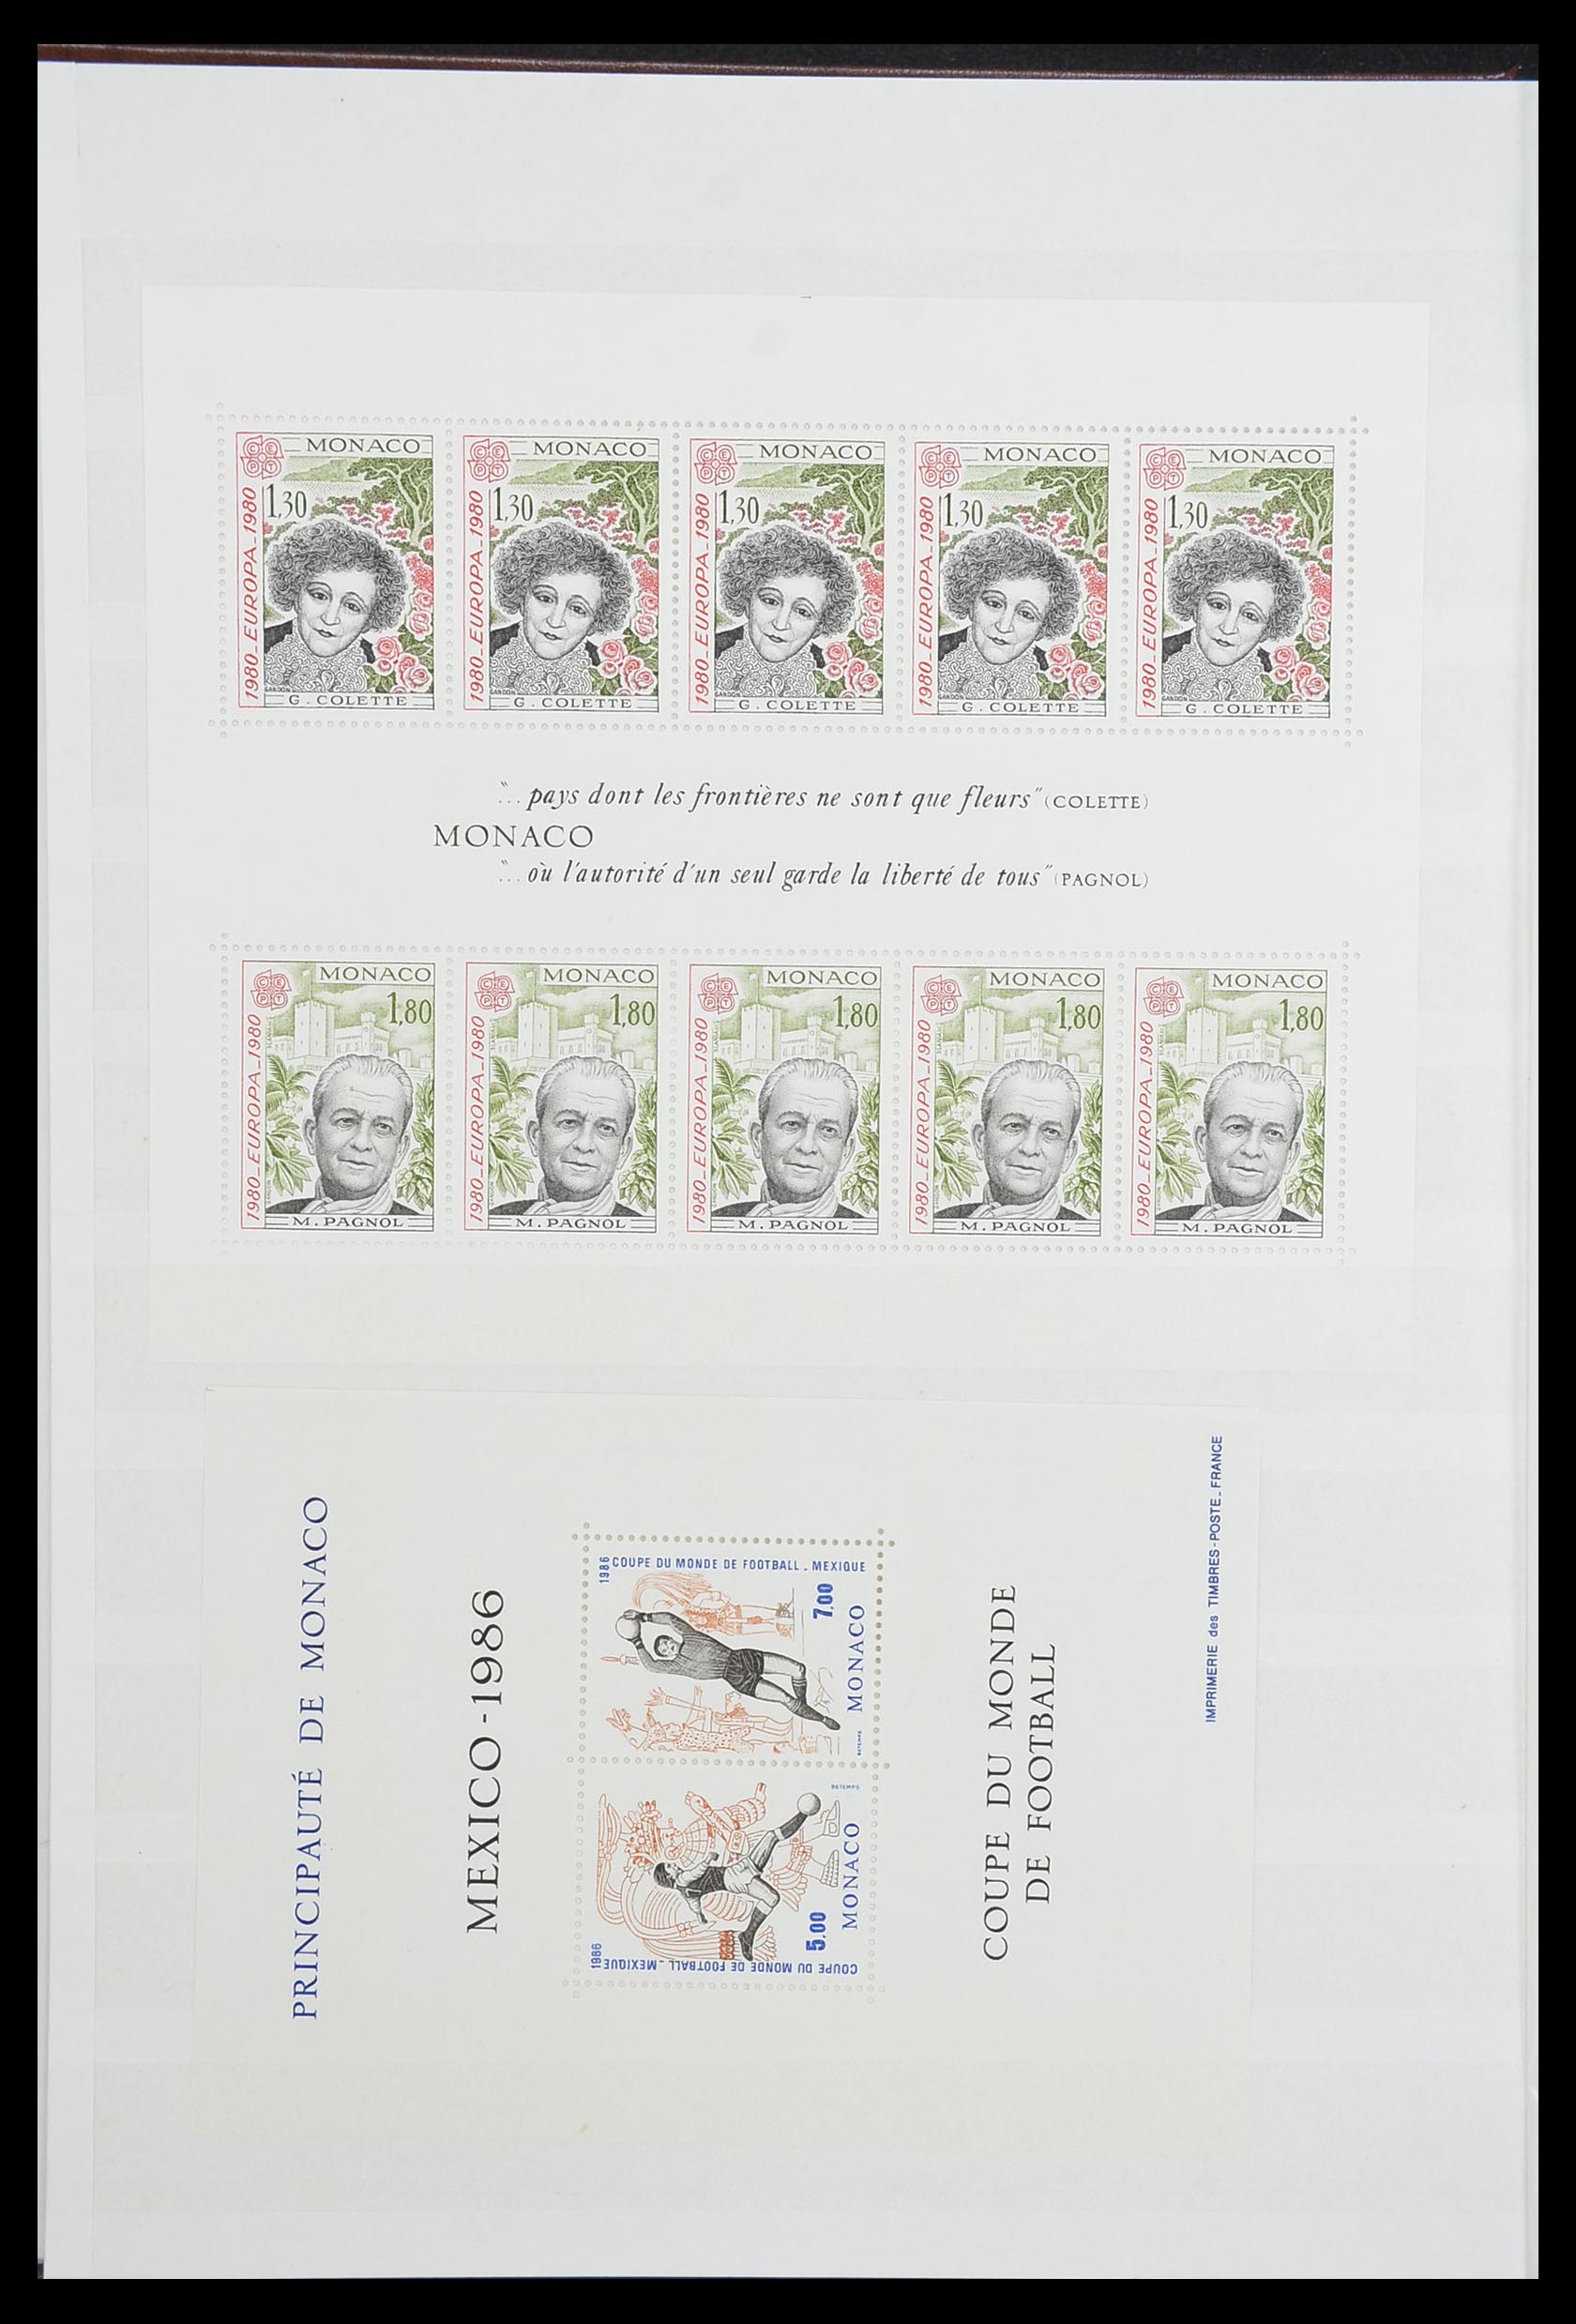 33833 006 - Stamp collection 33833 Monaco souvenir sheets 1979-2015.